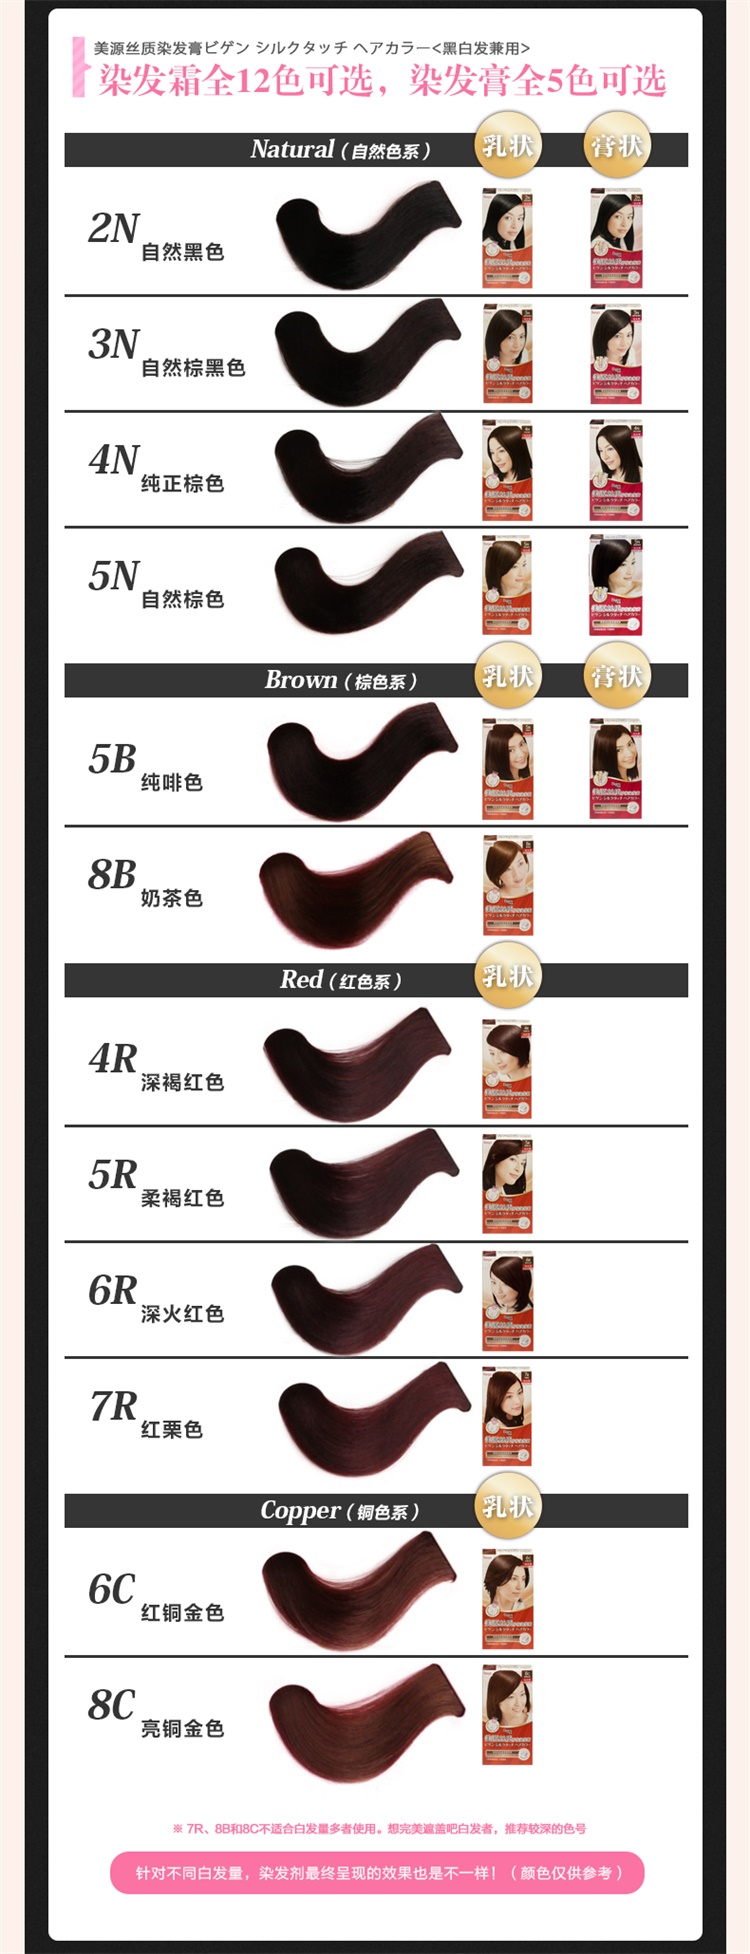 【国内贸易】日本美源丝质护发染发膏自然黑色2N(40g+40g)遮白发染发剂(图8)